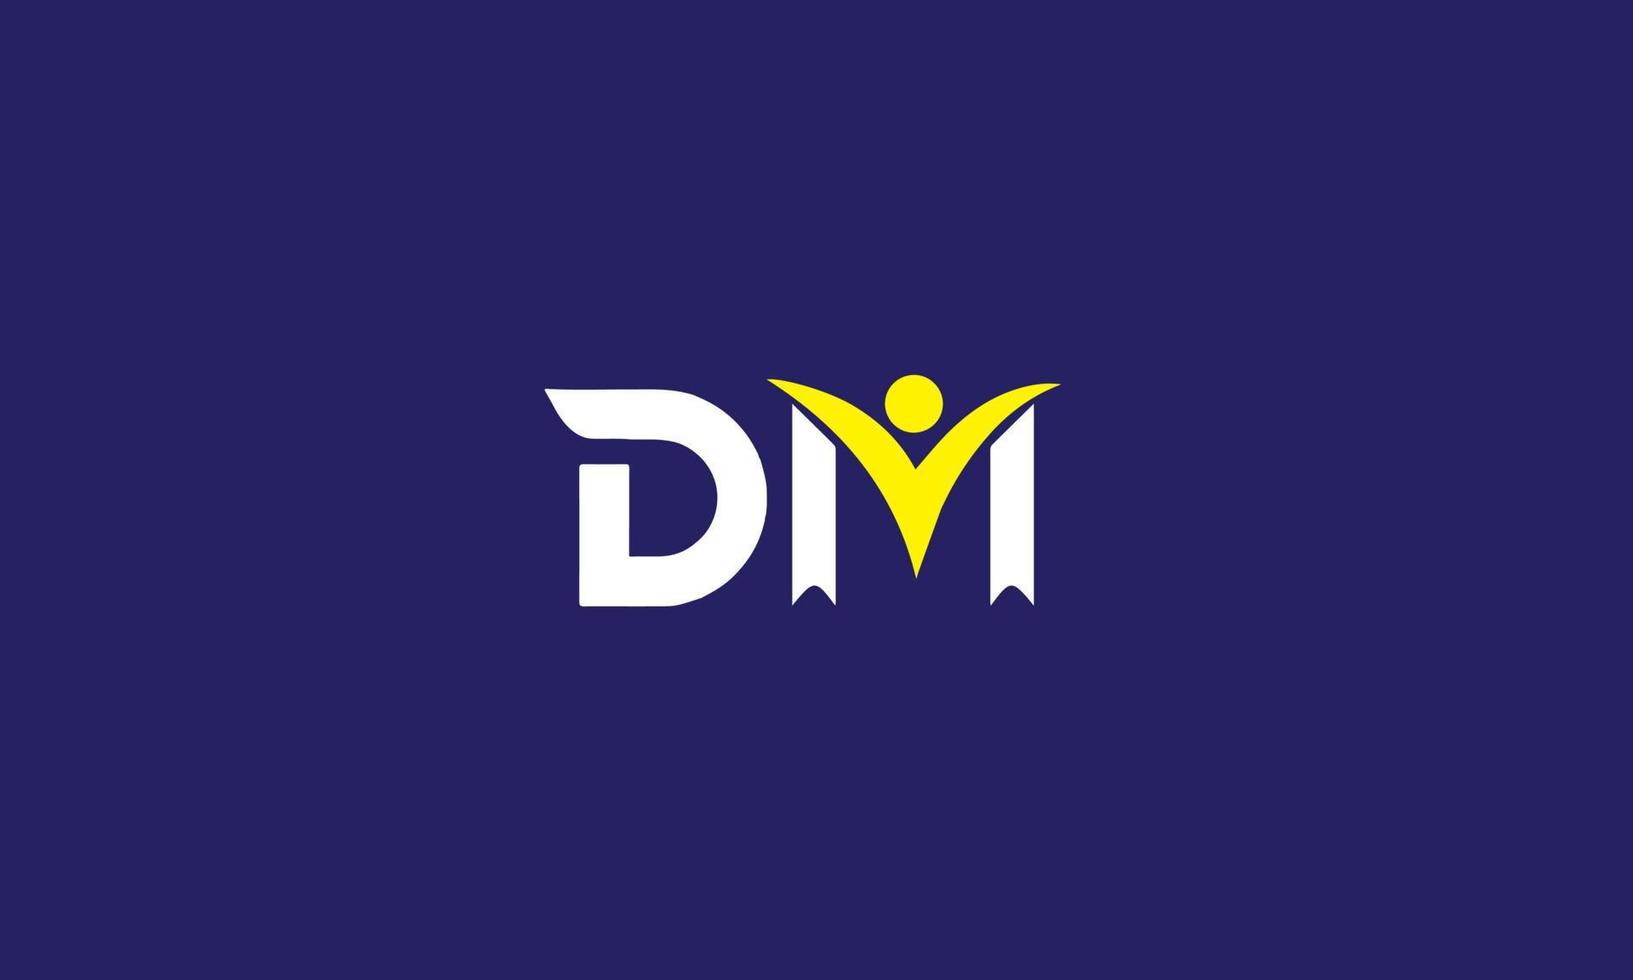 MD M D Letter Logo Design vector